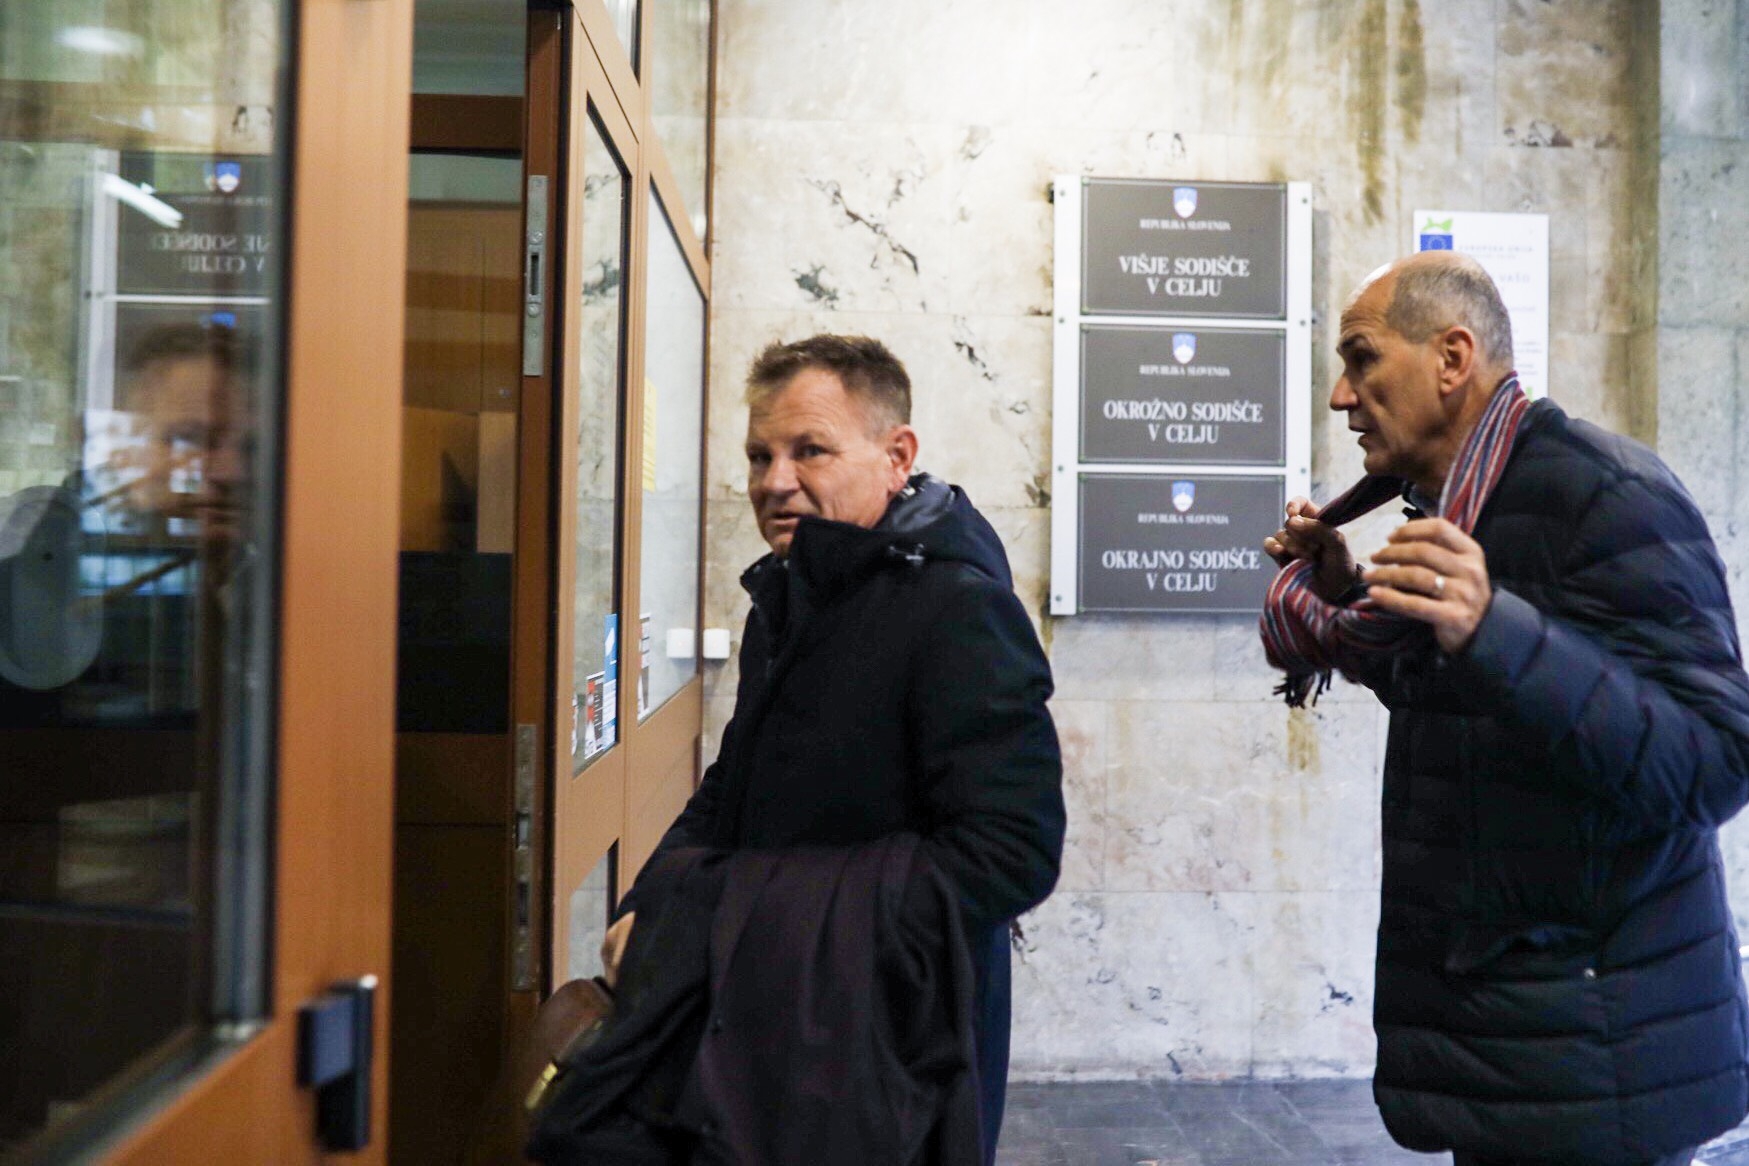 Odvetnik Franci Matoz in predsednik SDS Janez Janša ob prihodu na celjsko sodišče oktobra lani. Foto: Polona Avanzo